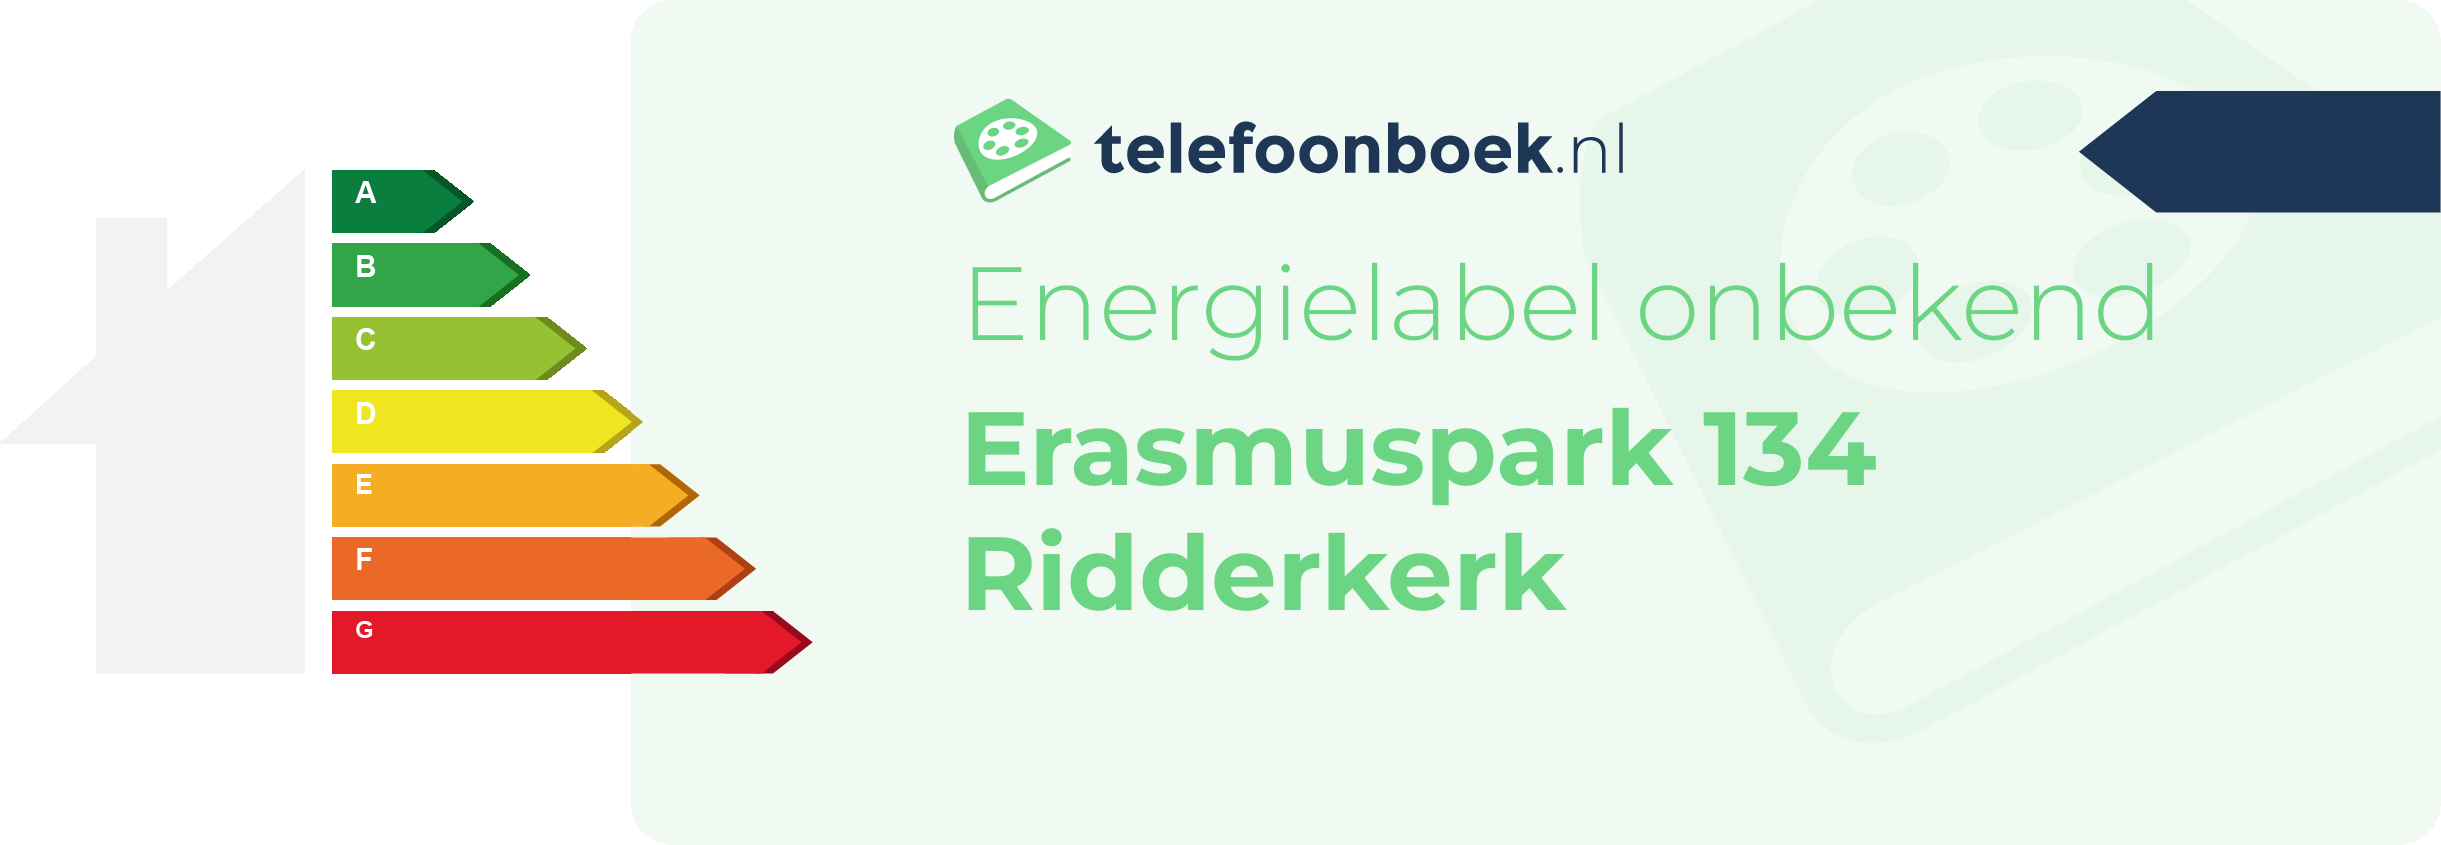 Energielabel Erasmuspark 134 Ridderkerk